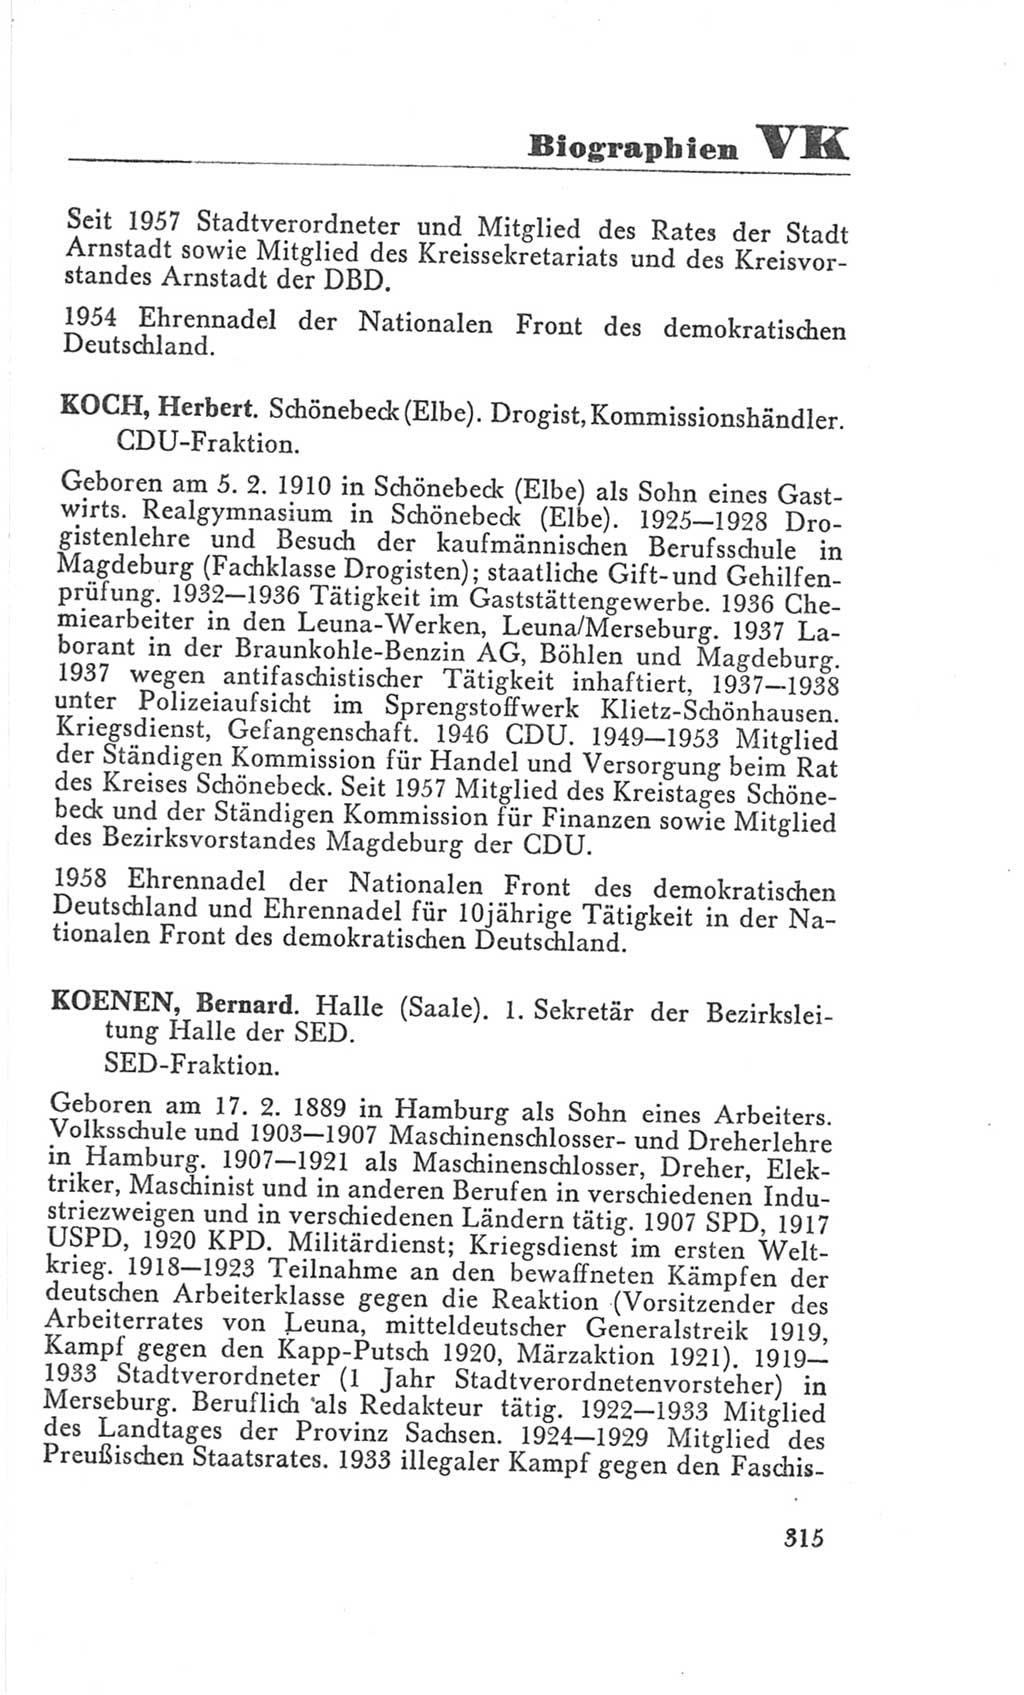 Handbuch der Volkskammer (VK) der Deutschen Demokratischen Republik (DDR), 3. Wahlperiode 1958-1963, Seite 315 (Hdb. VK. DDR 3. WP. 1958-1963, S. 315)